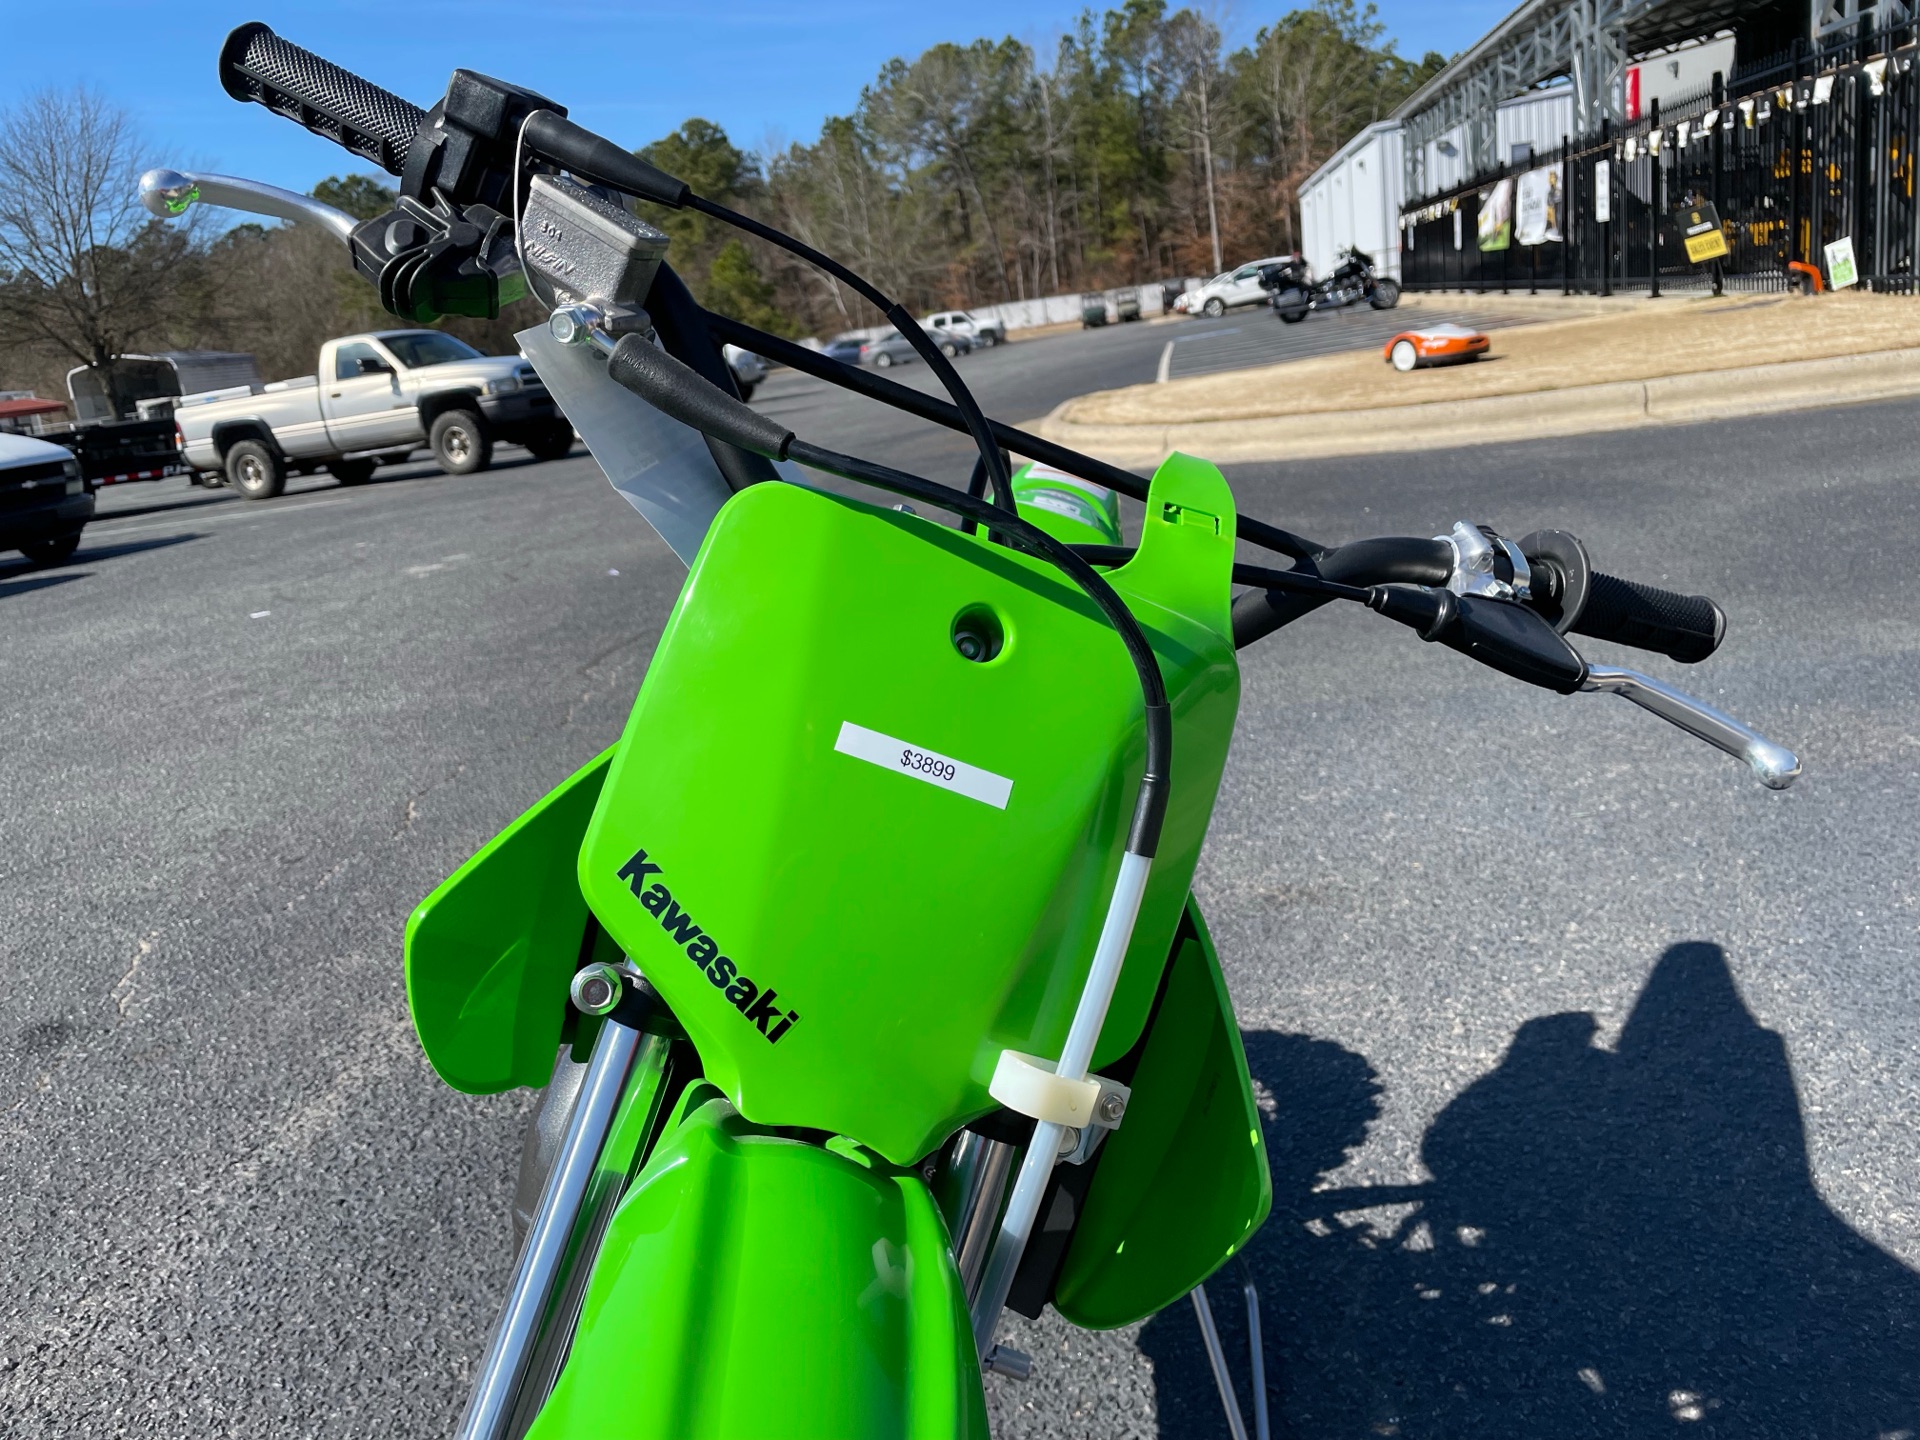 2022 Kawasaki KX 65 in Greenville, North Carolina - Photo 13